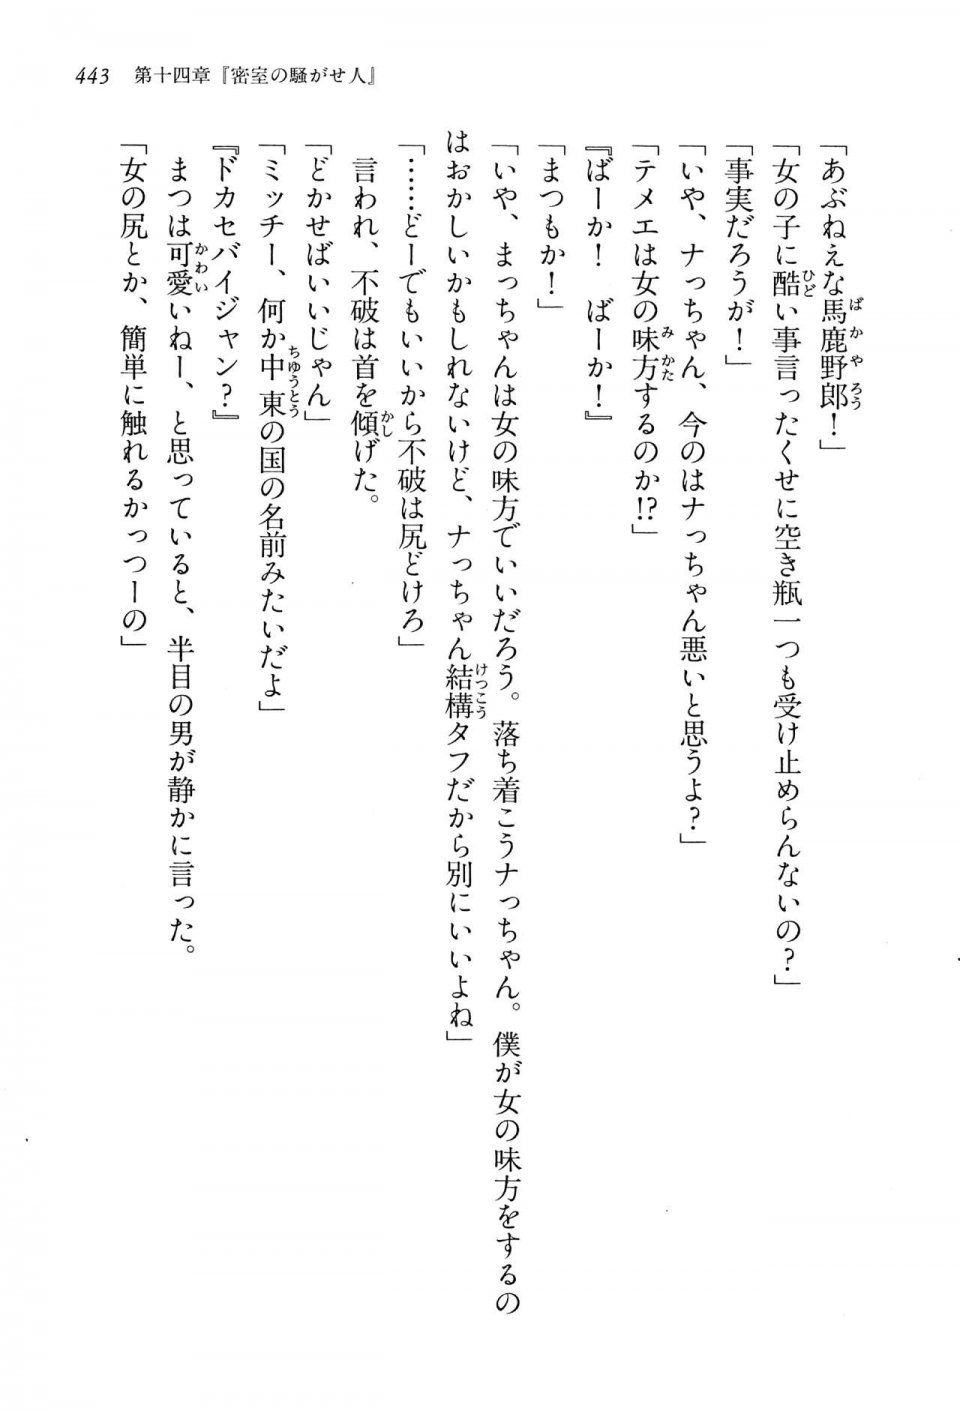 Kyoukai Senjou no Horizon LN Vol 13(6A) - Photo #443